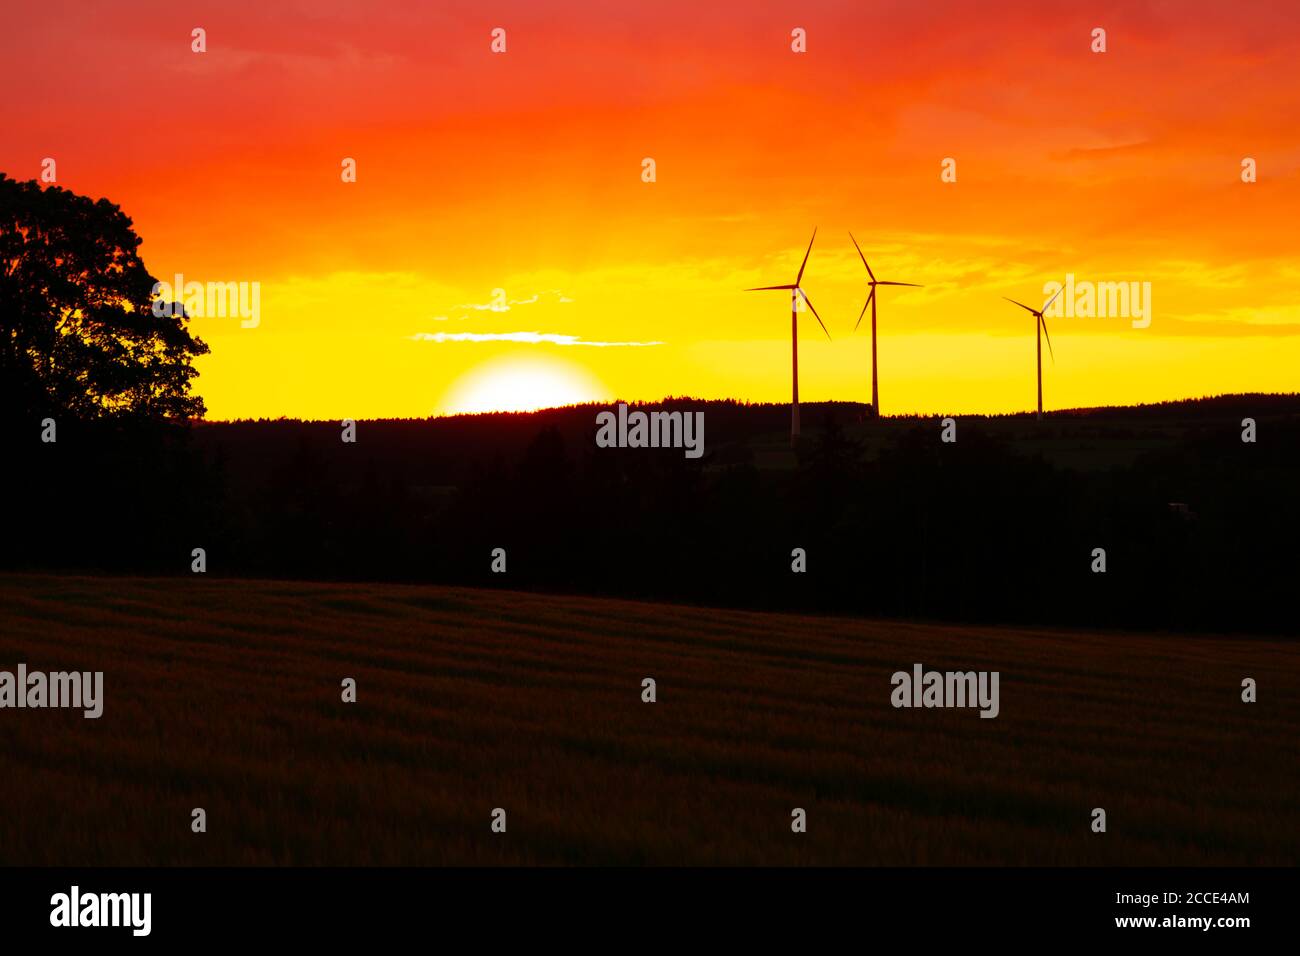 Naranja cielo puesta de sol con turbinas de viento siluetas en el fondo Foto de stock